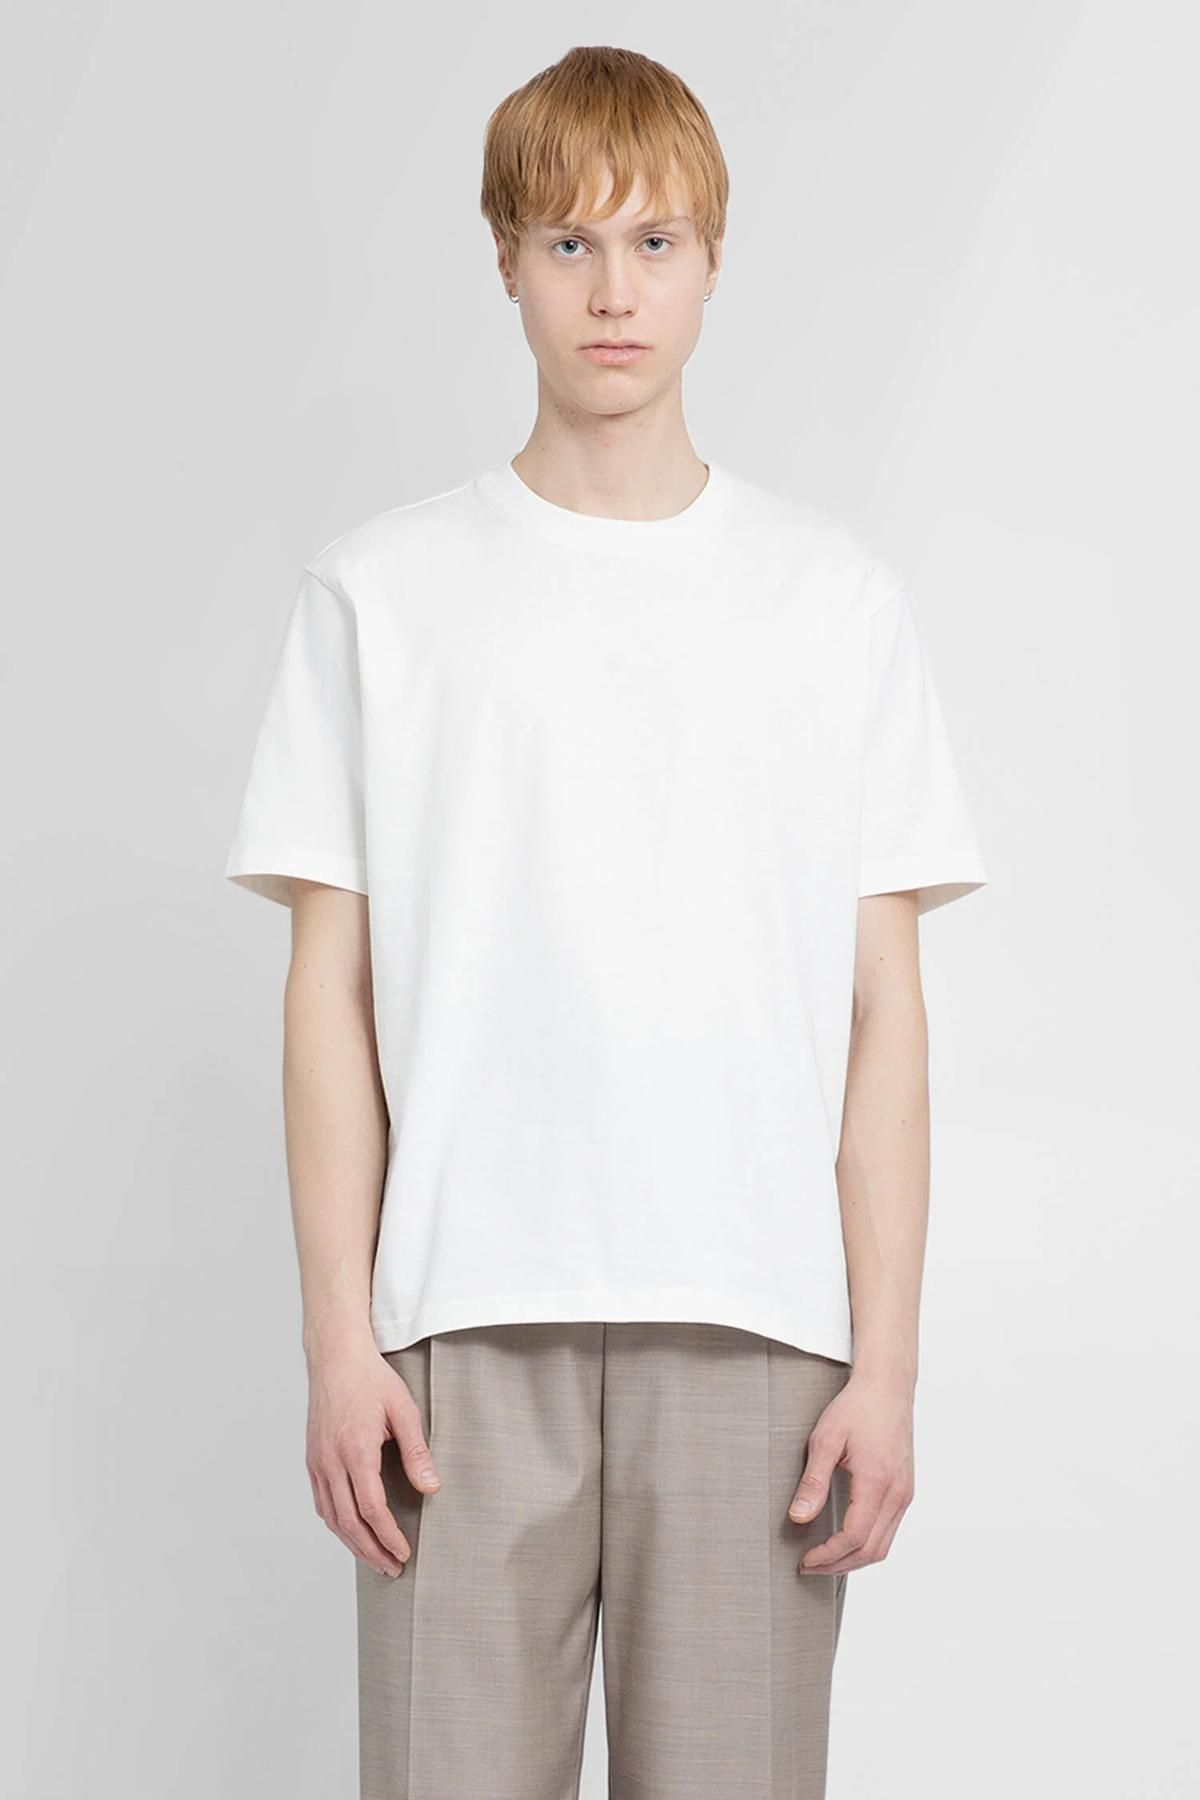 Bottega Veneta - T-shirt for Man - White - 754683V39G0-9071